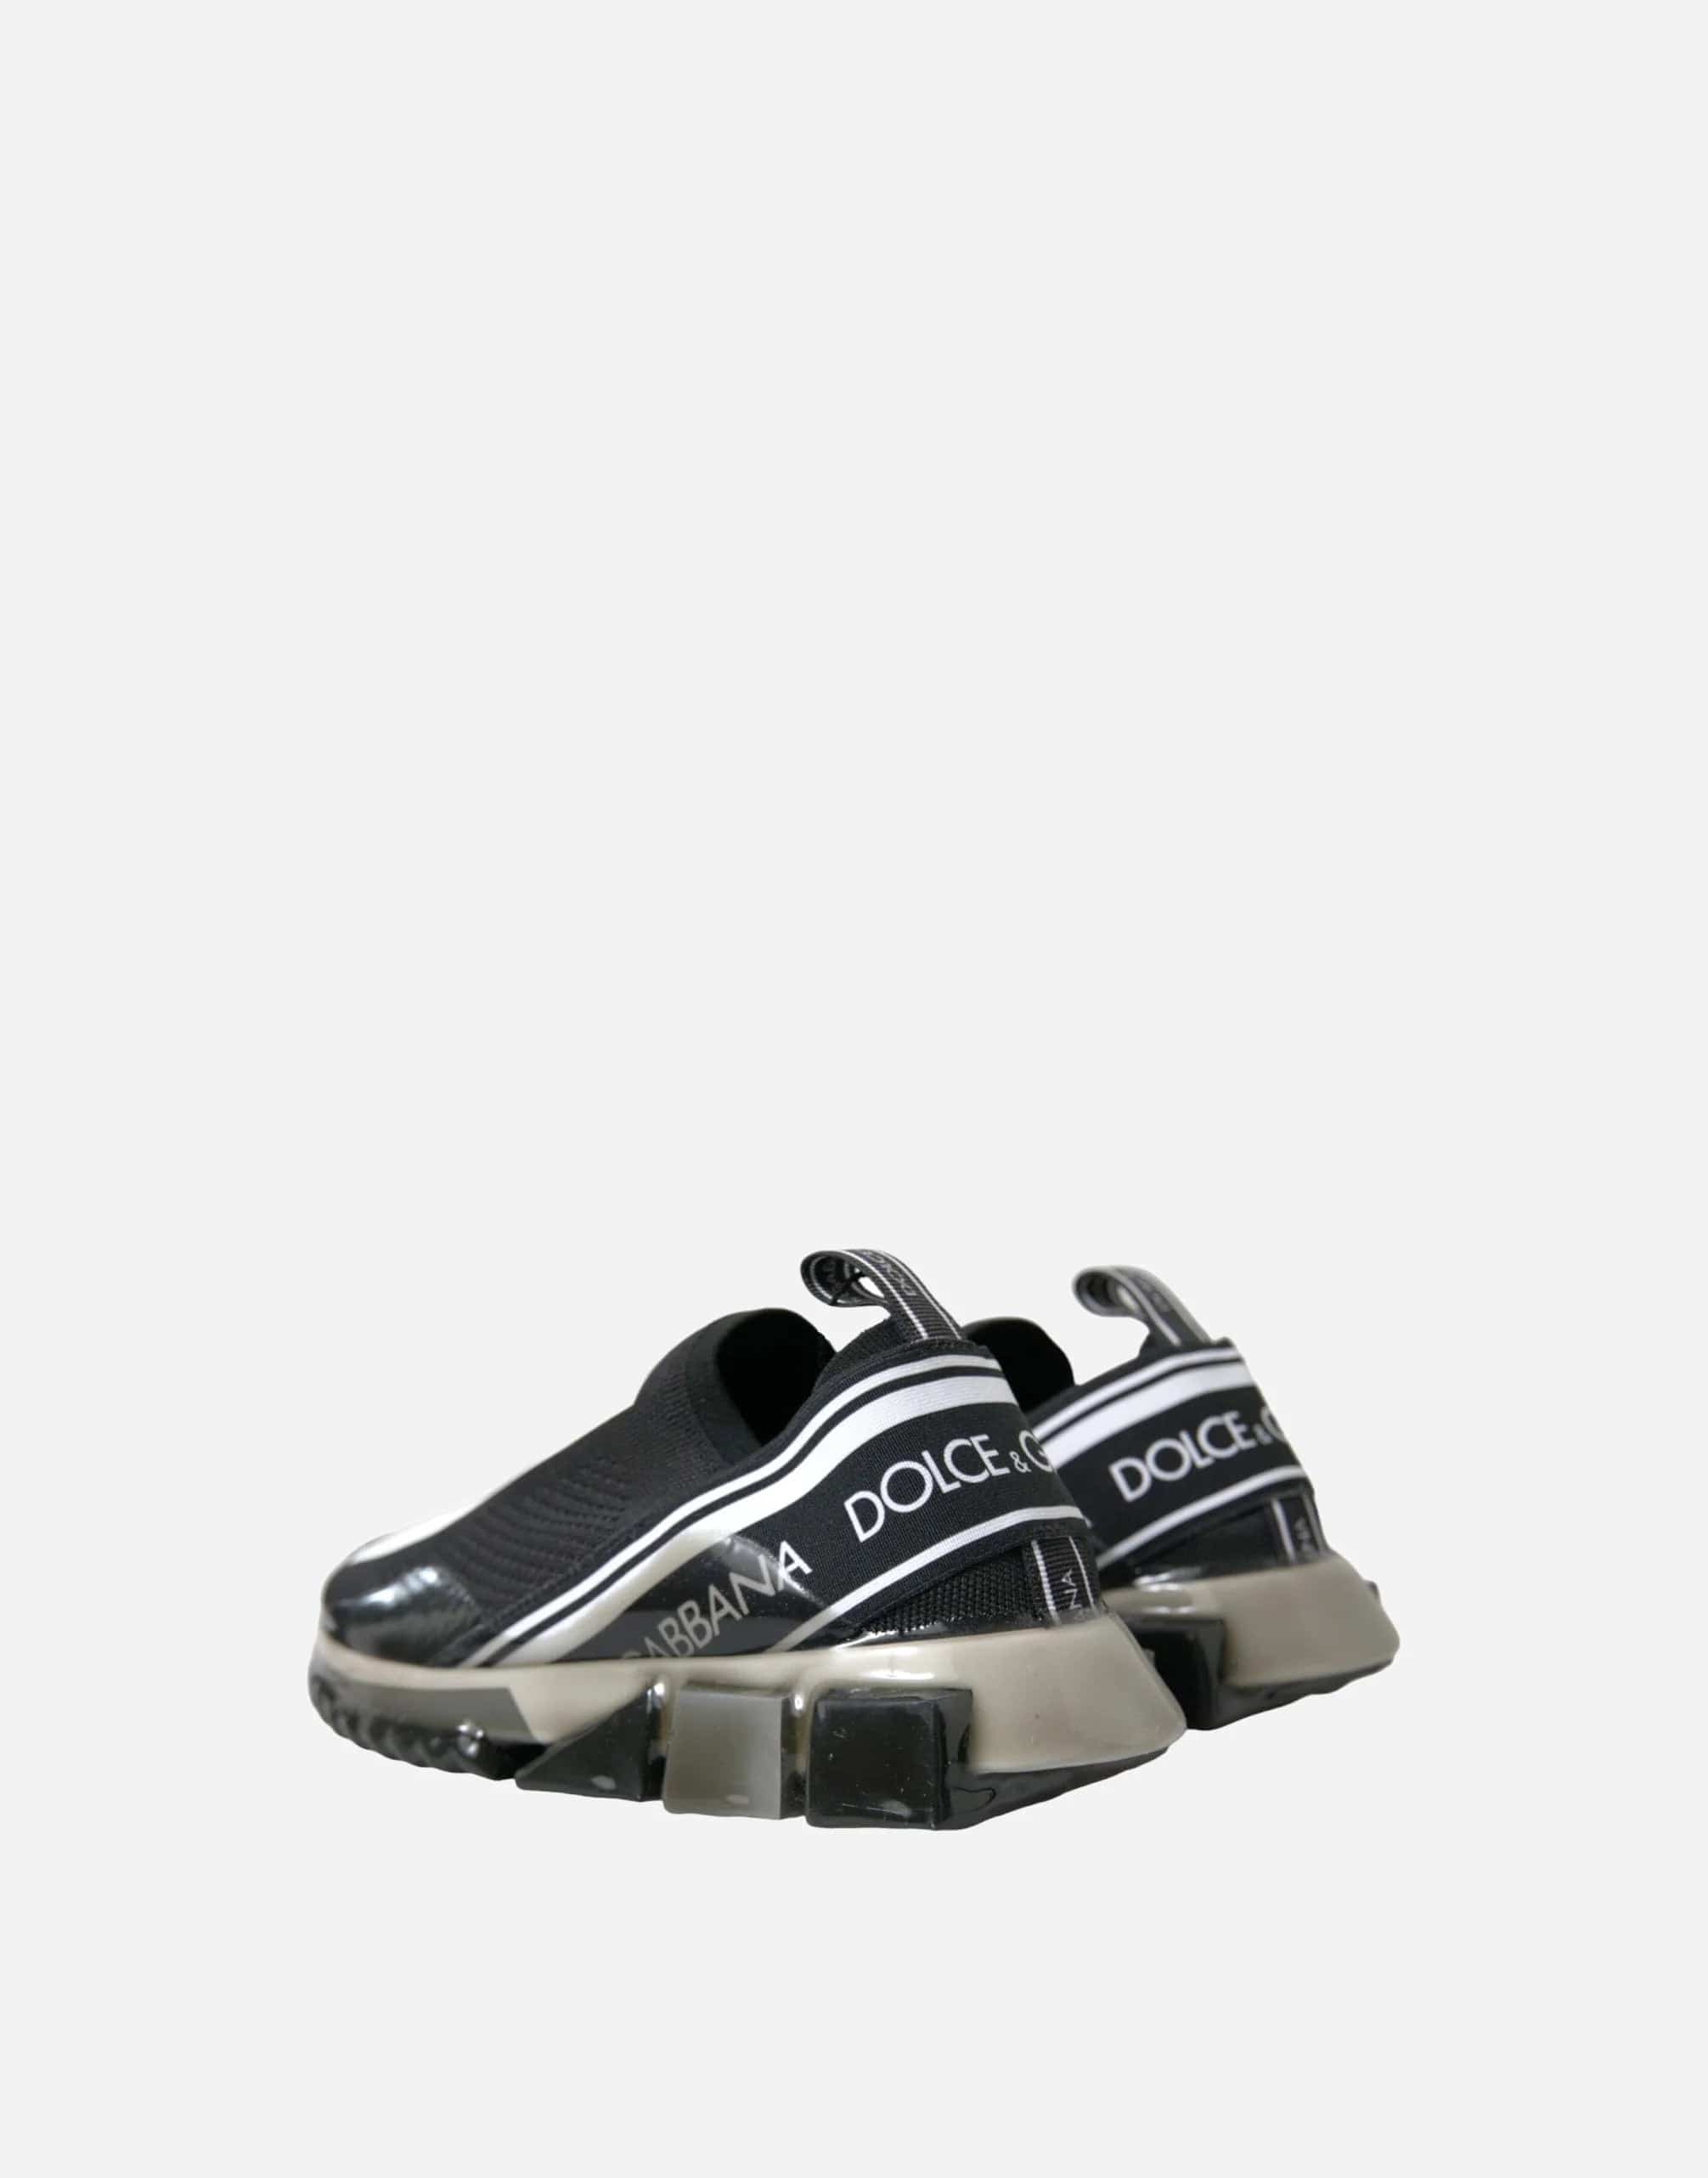 Dolce & Gabbana Slip On Sorrento Sneakers